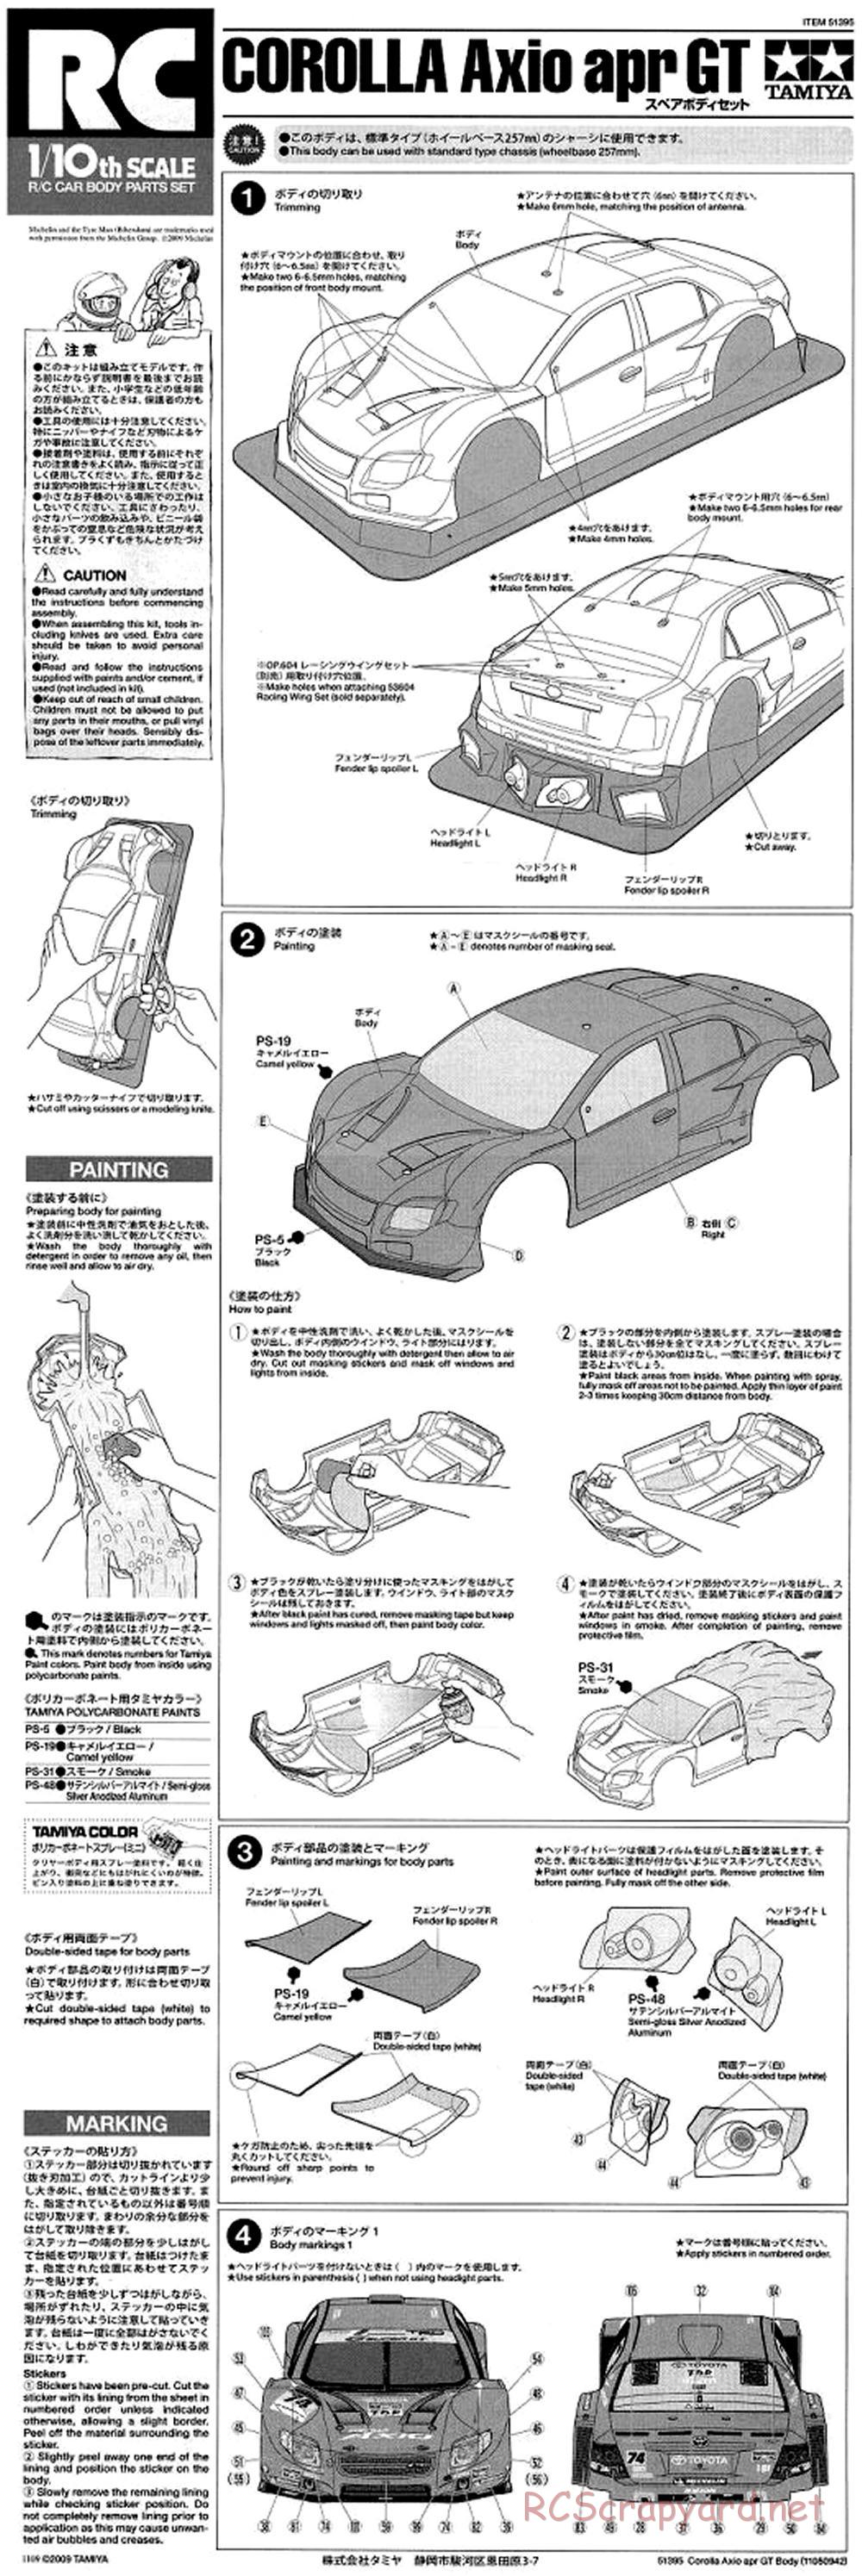 Tamiya - Corolla Axio apr GT - TA05 Ver.II Chassis - Body Manual - Page 1